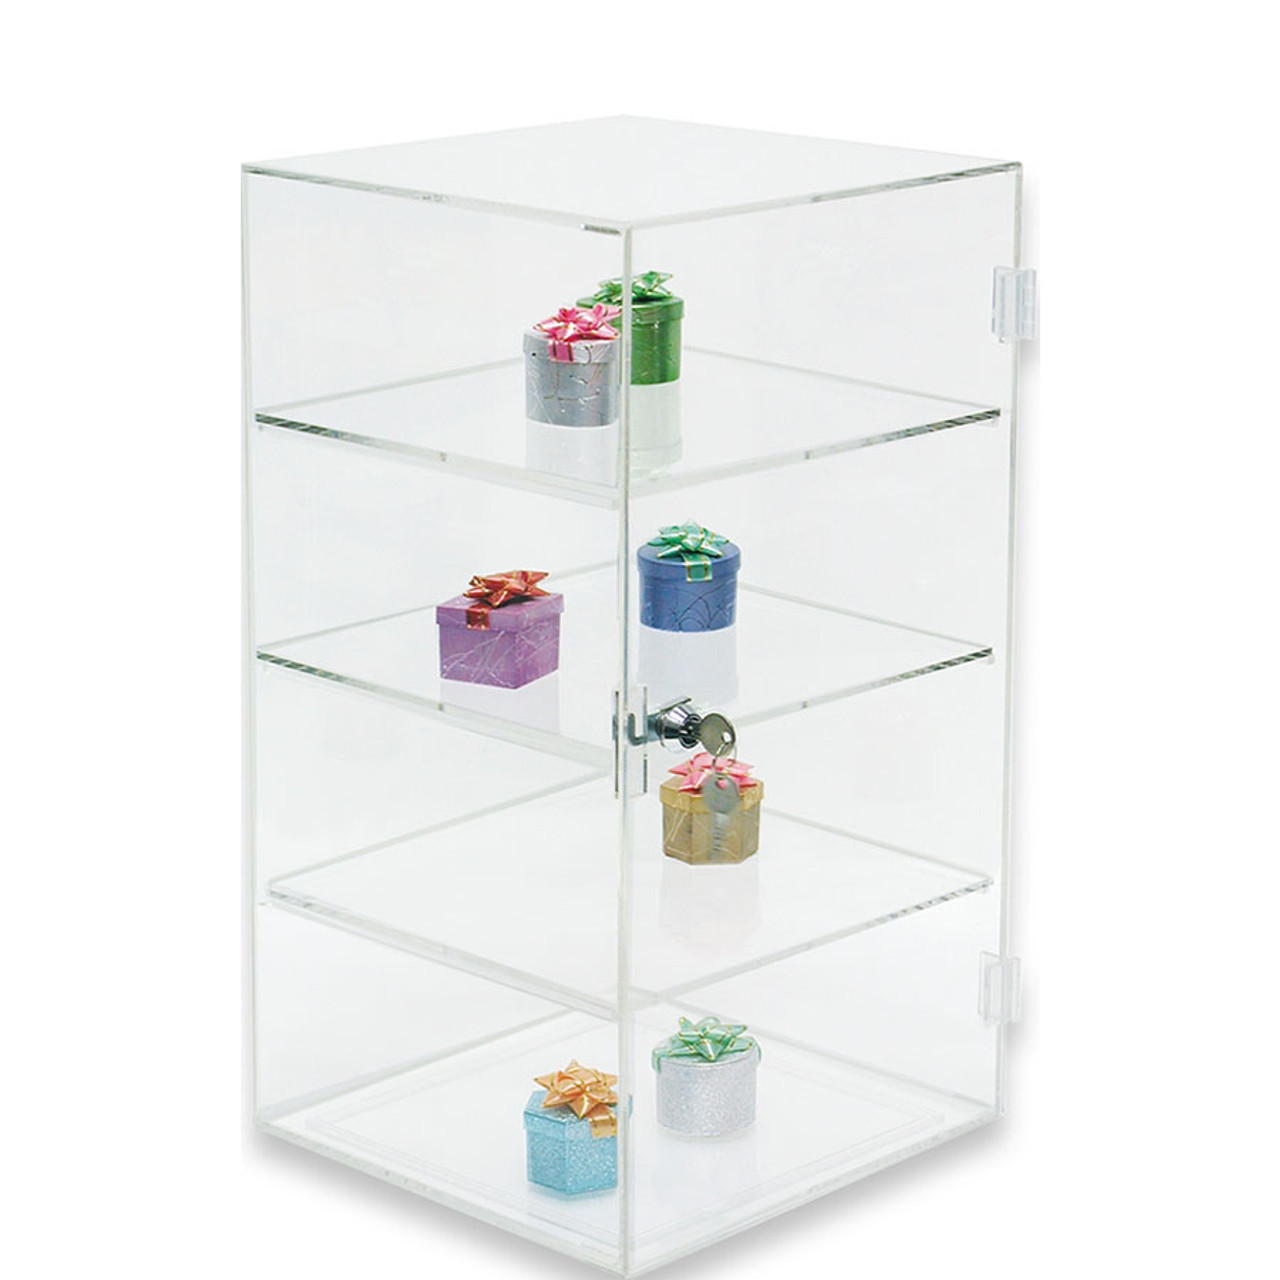 Acrylic 2 Shelf Counter Top Display Case